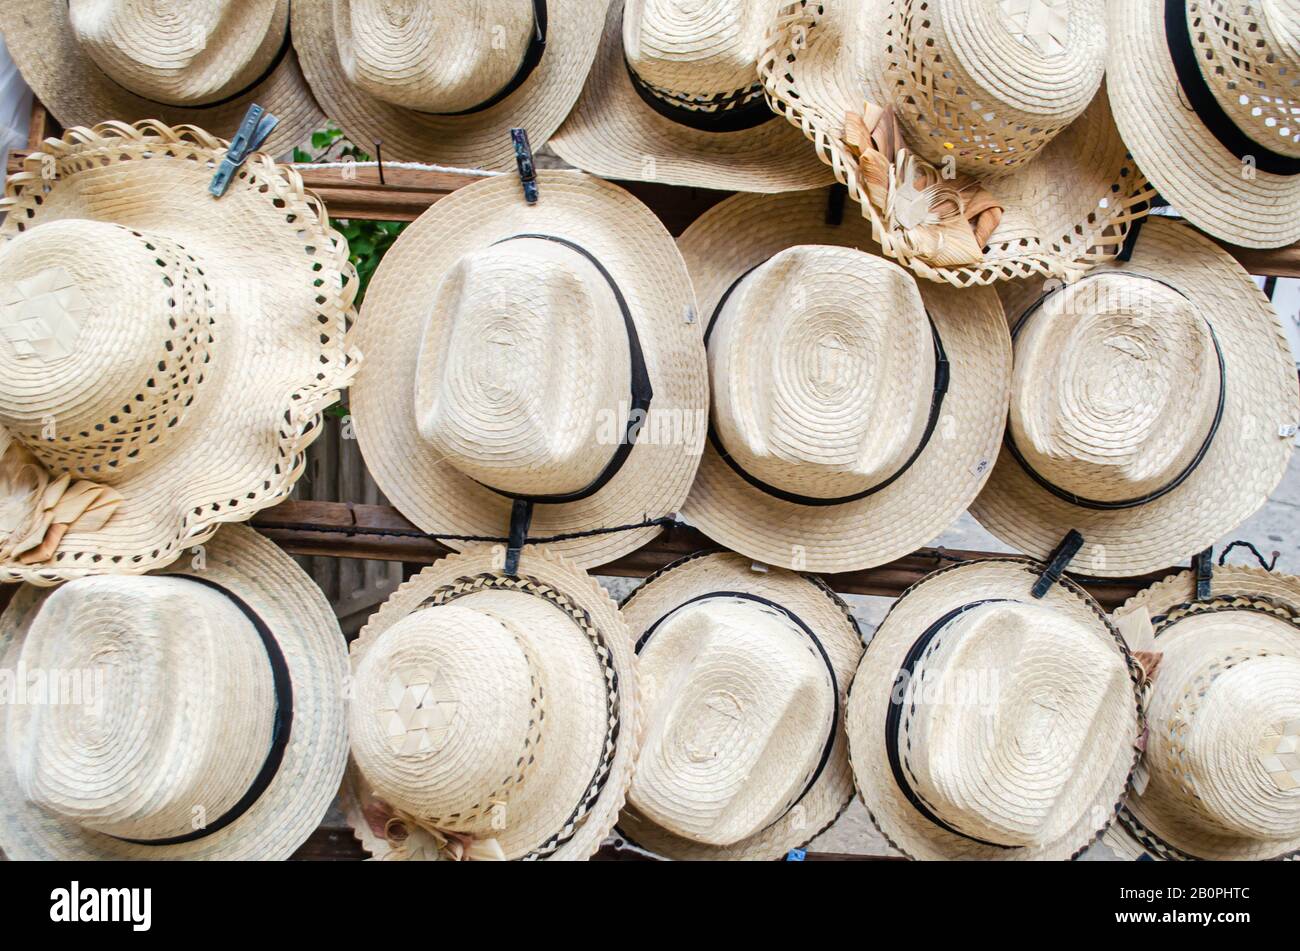 Hüte, die in den kubanischen Straßen verkauft werden und von lokalen Handwerkern nach traditionellen Methoden hergestellt werden, wie zum Beispiel das Weben von Palmblättern oder Stroh, sind sehr beliebte Souvenirs. Stockfoto